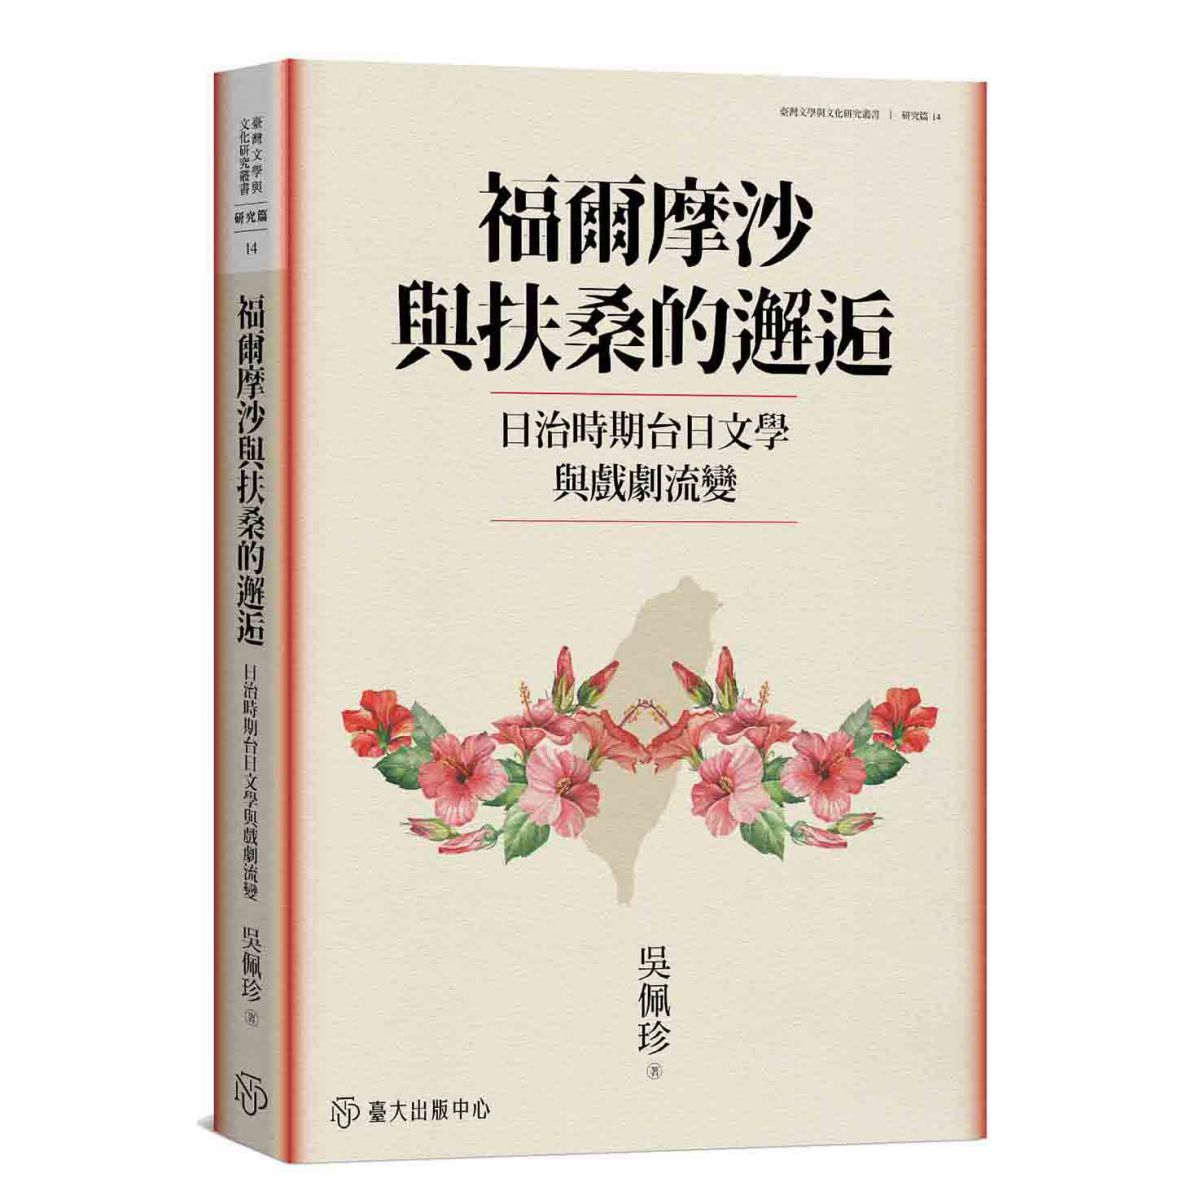 《福爾摩沙與扶桑的邂逅》重新省視台灣、日本與東亞區域間越境的歷史、文學、戲劇現象